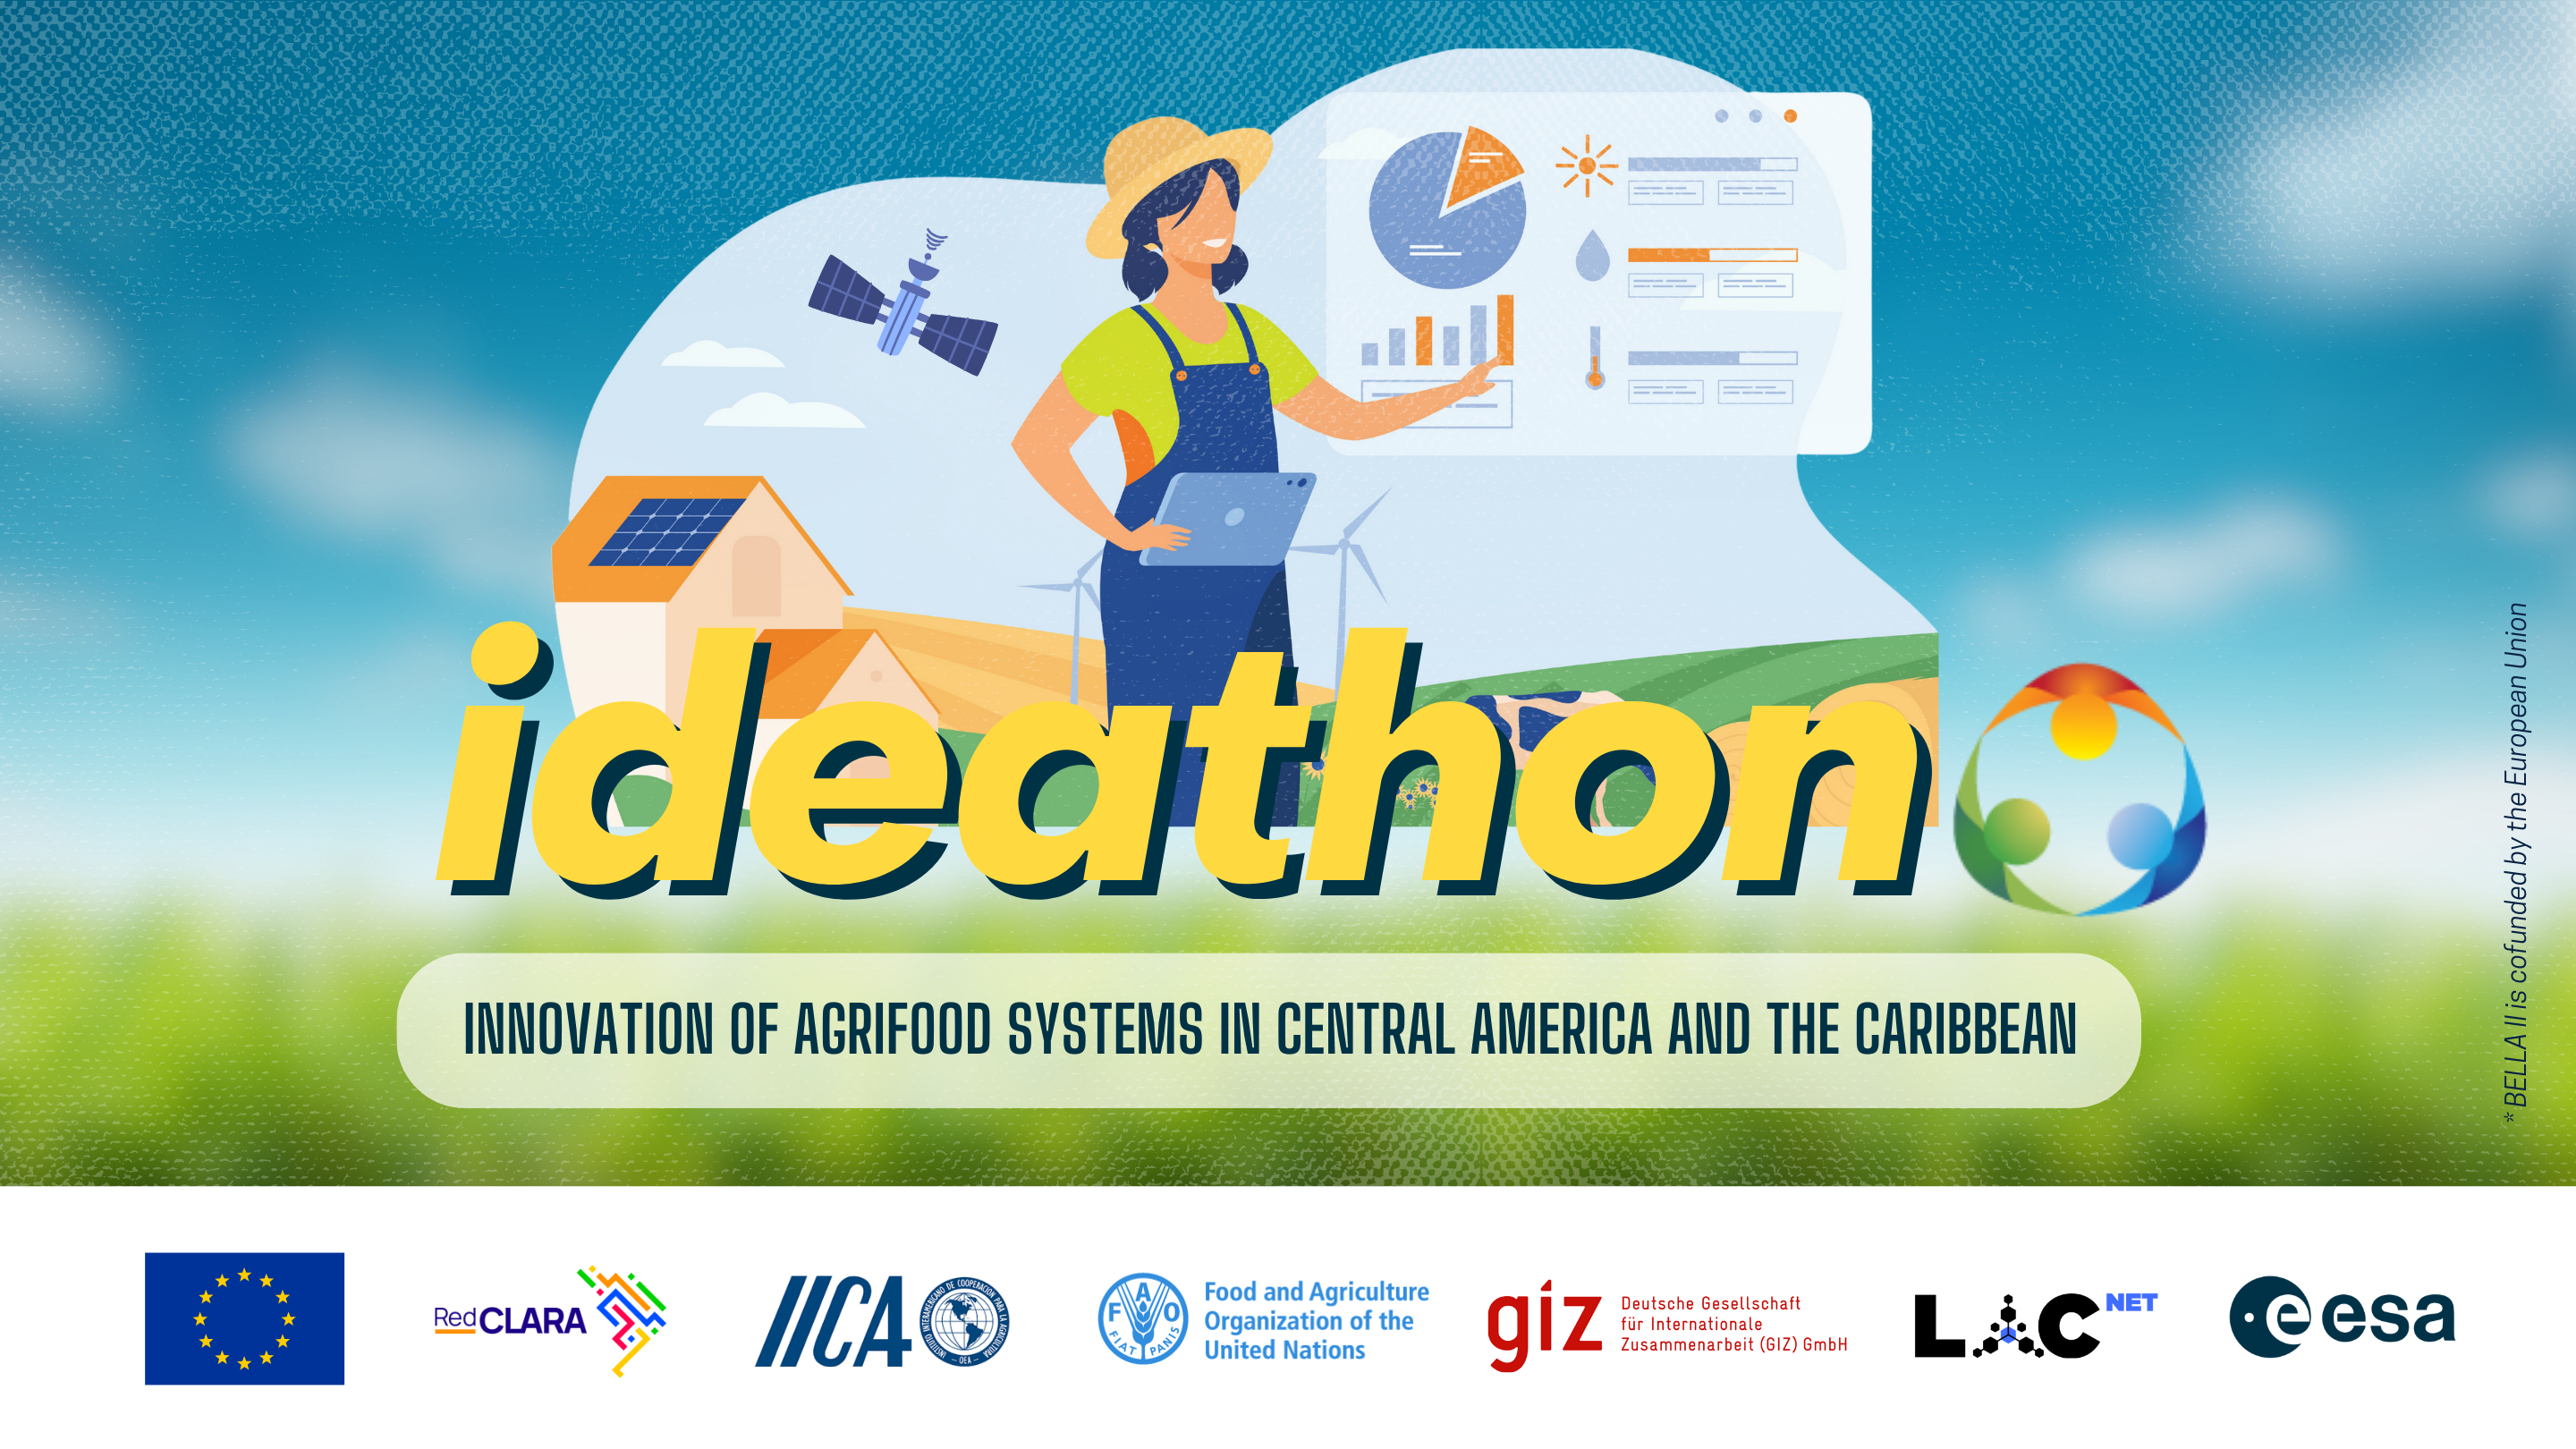 Novo Ideathon BELLA II: em busca de ideias inovadoras para transformar os sistemas agroalimentares na América Central e no Caribe